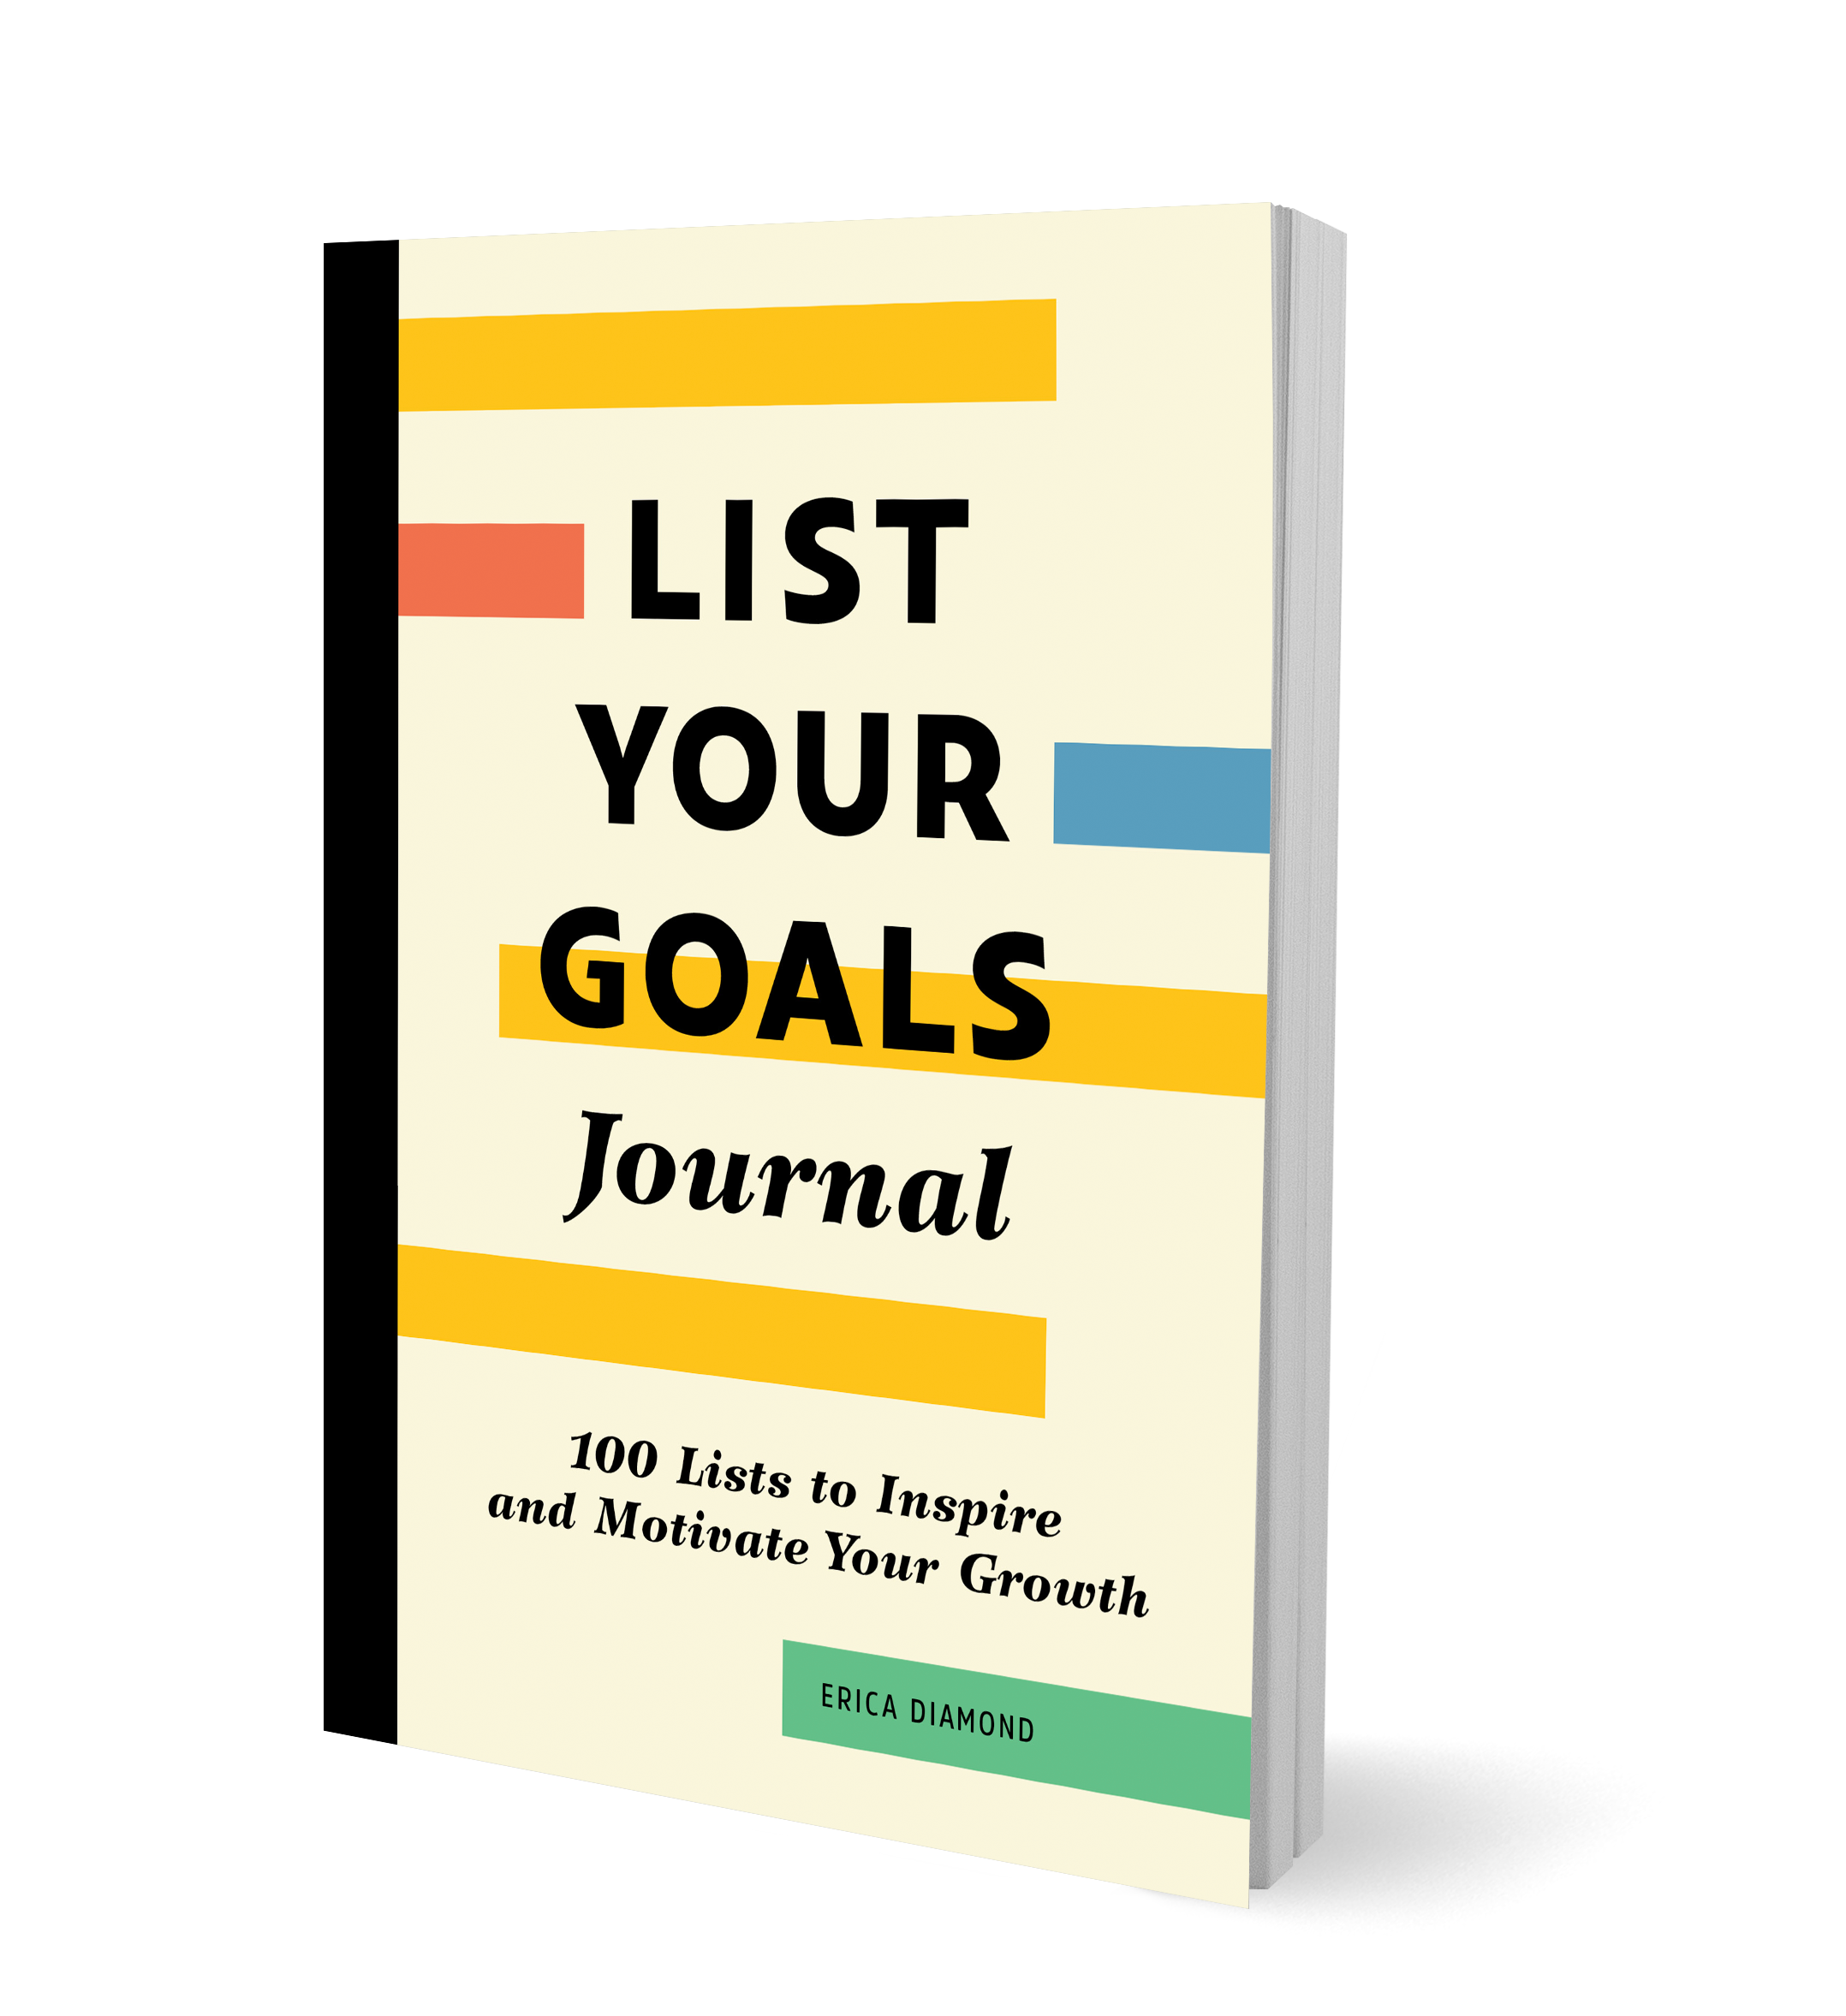 LIST YOUR GOALS Journal